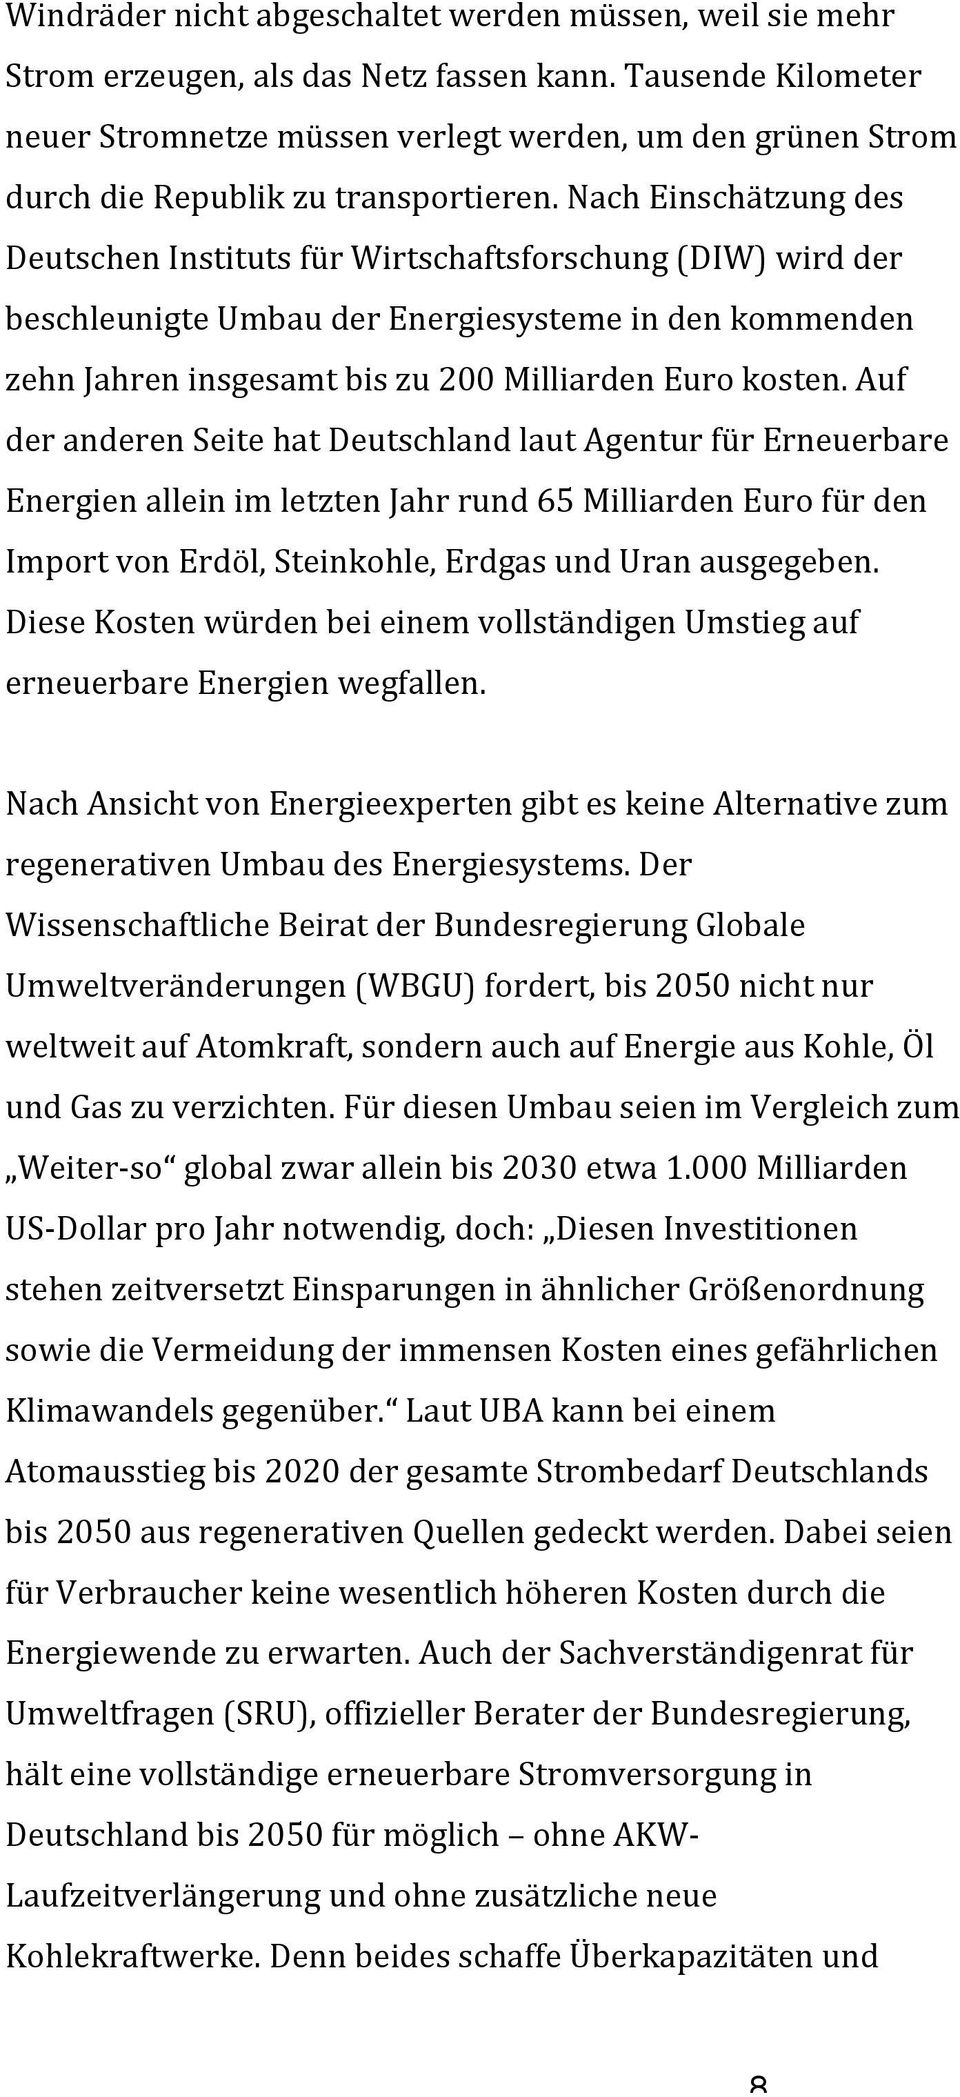 Nach Einschätzung des Deutschen Instituts für Wirtschaftsforschung (DIW) wird der beschleunigte Umbau der Energiesysteme in den kommenden zehn Jahren insgesamt bis zu 200 Milliarden Euro kosten.